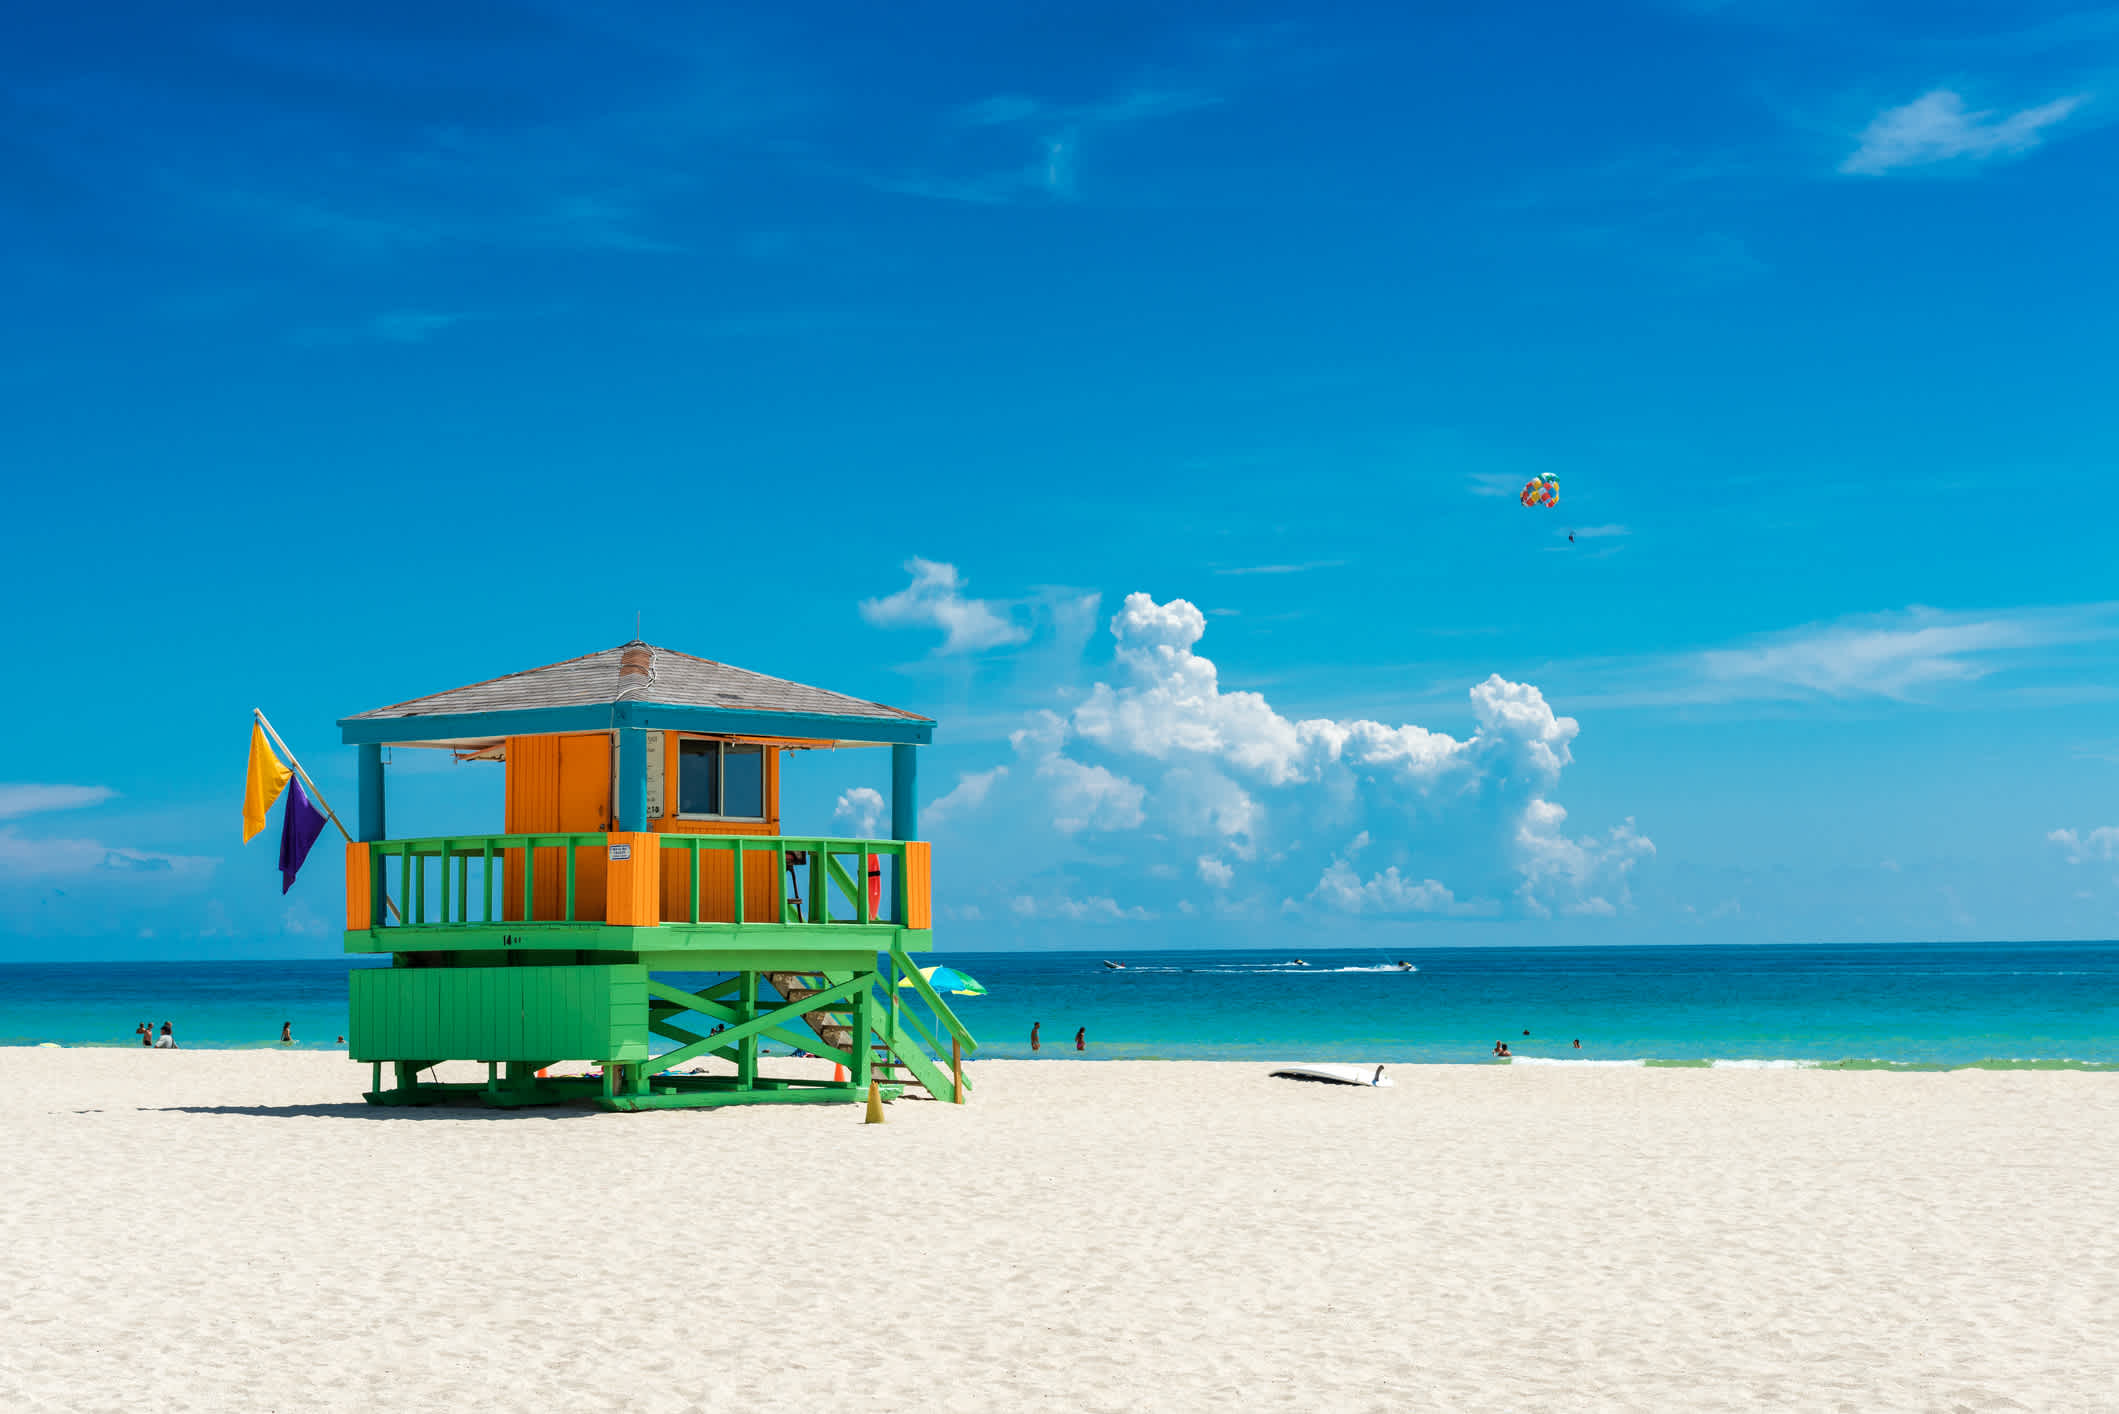 Visitez Miami et admirez ses cabanons de sauveteurs colorés sur ses plages pendant votre voyage aux États-Unis.